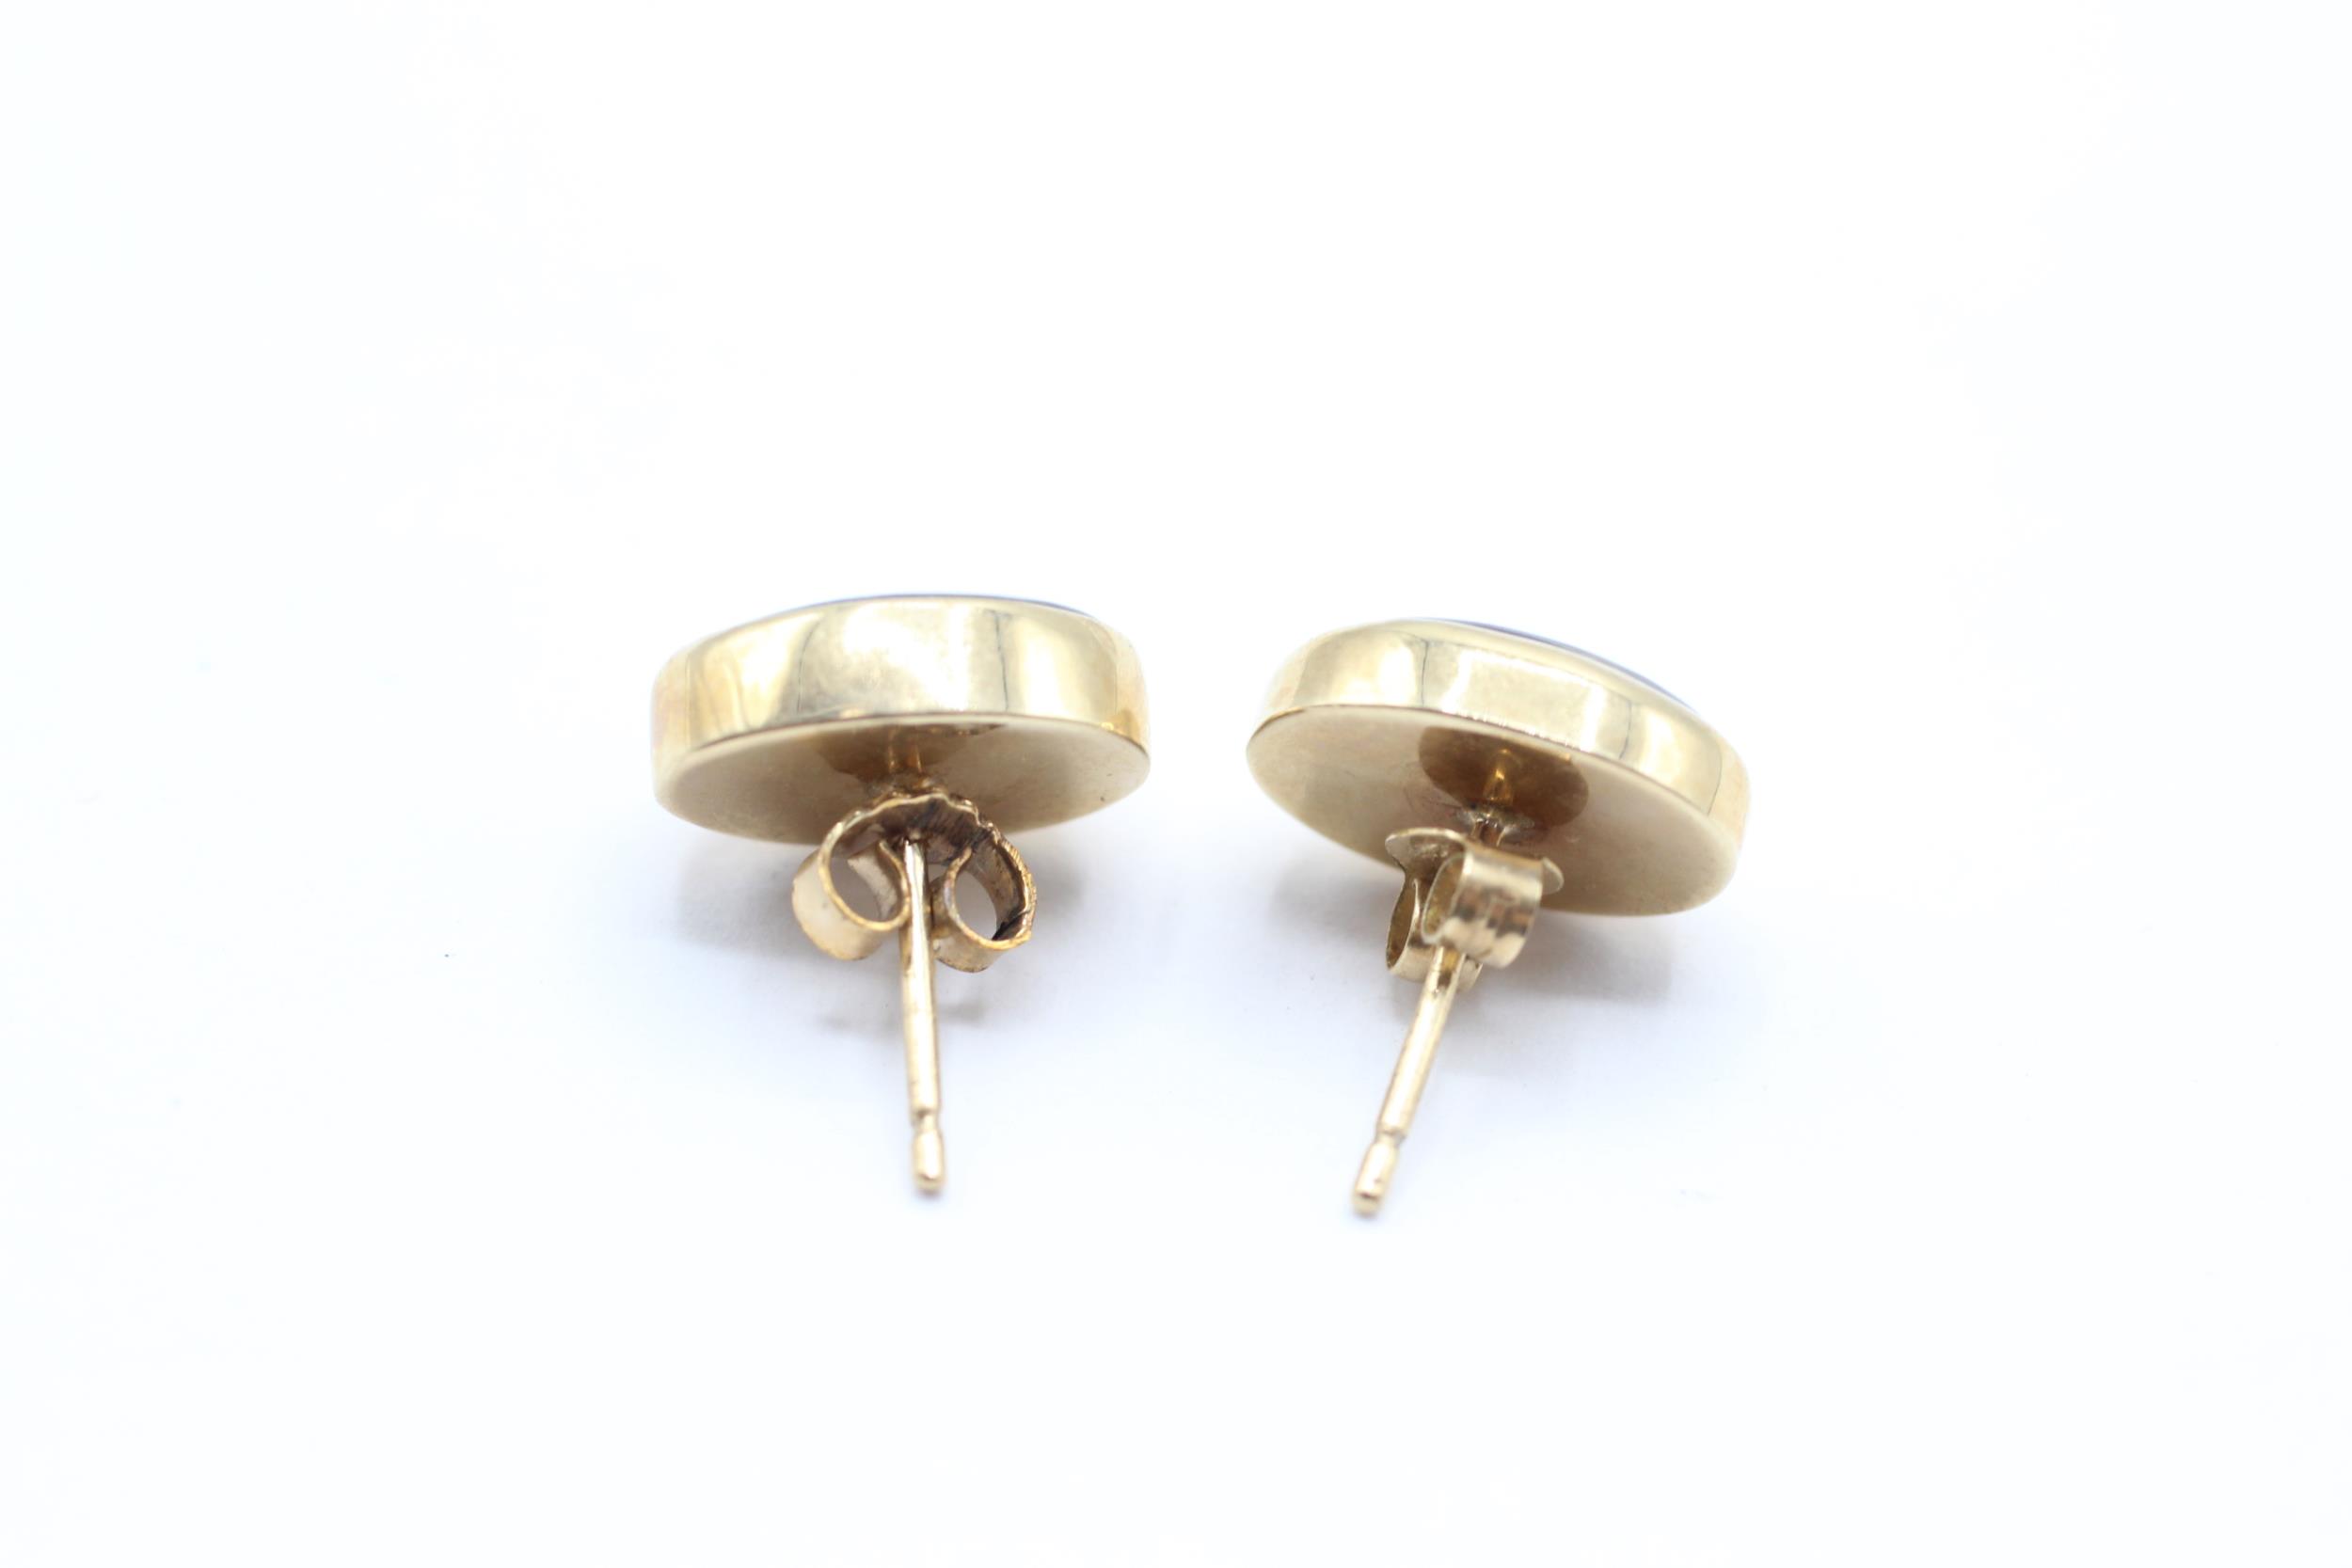 9ct gold black opal triplet stud earrings 4.1 g - Image 4 of 4